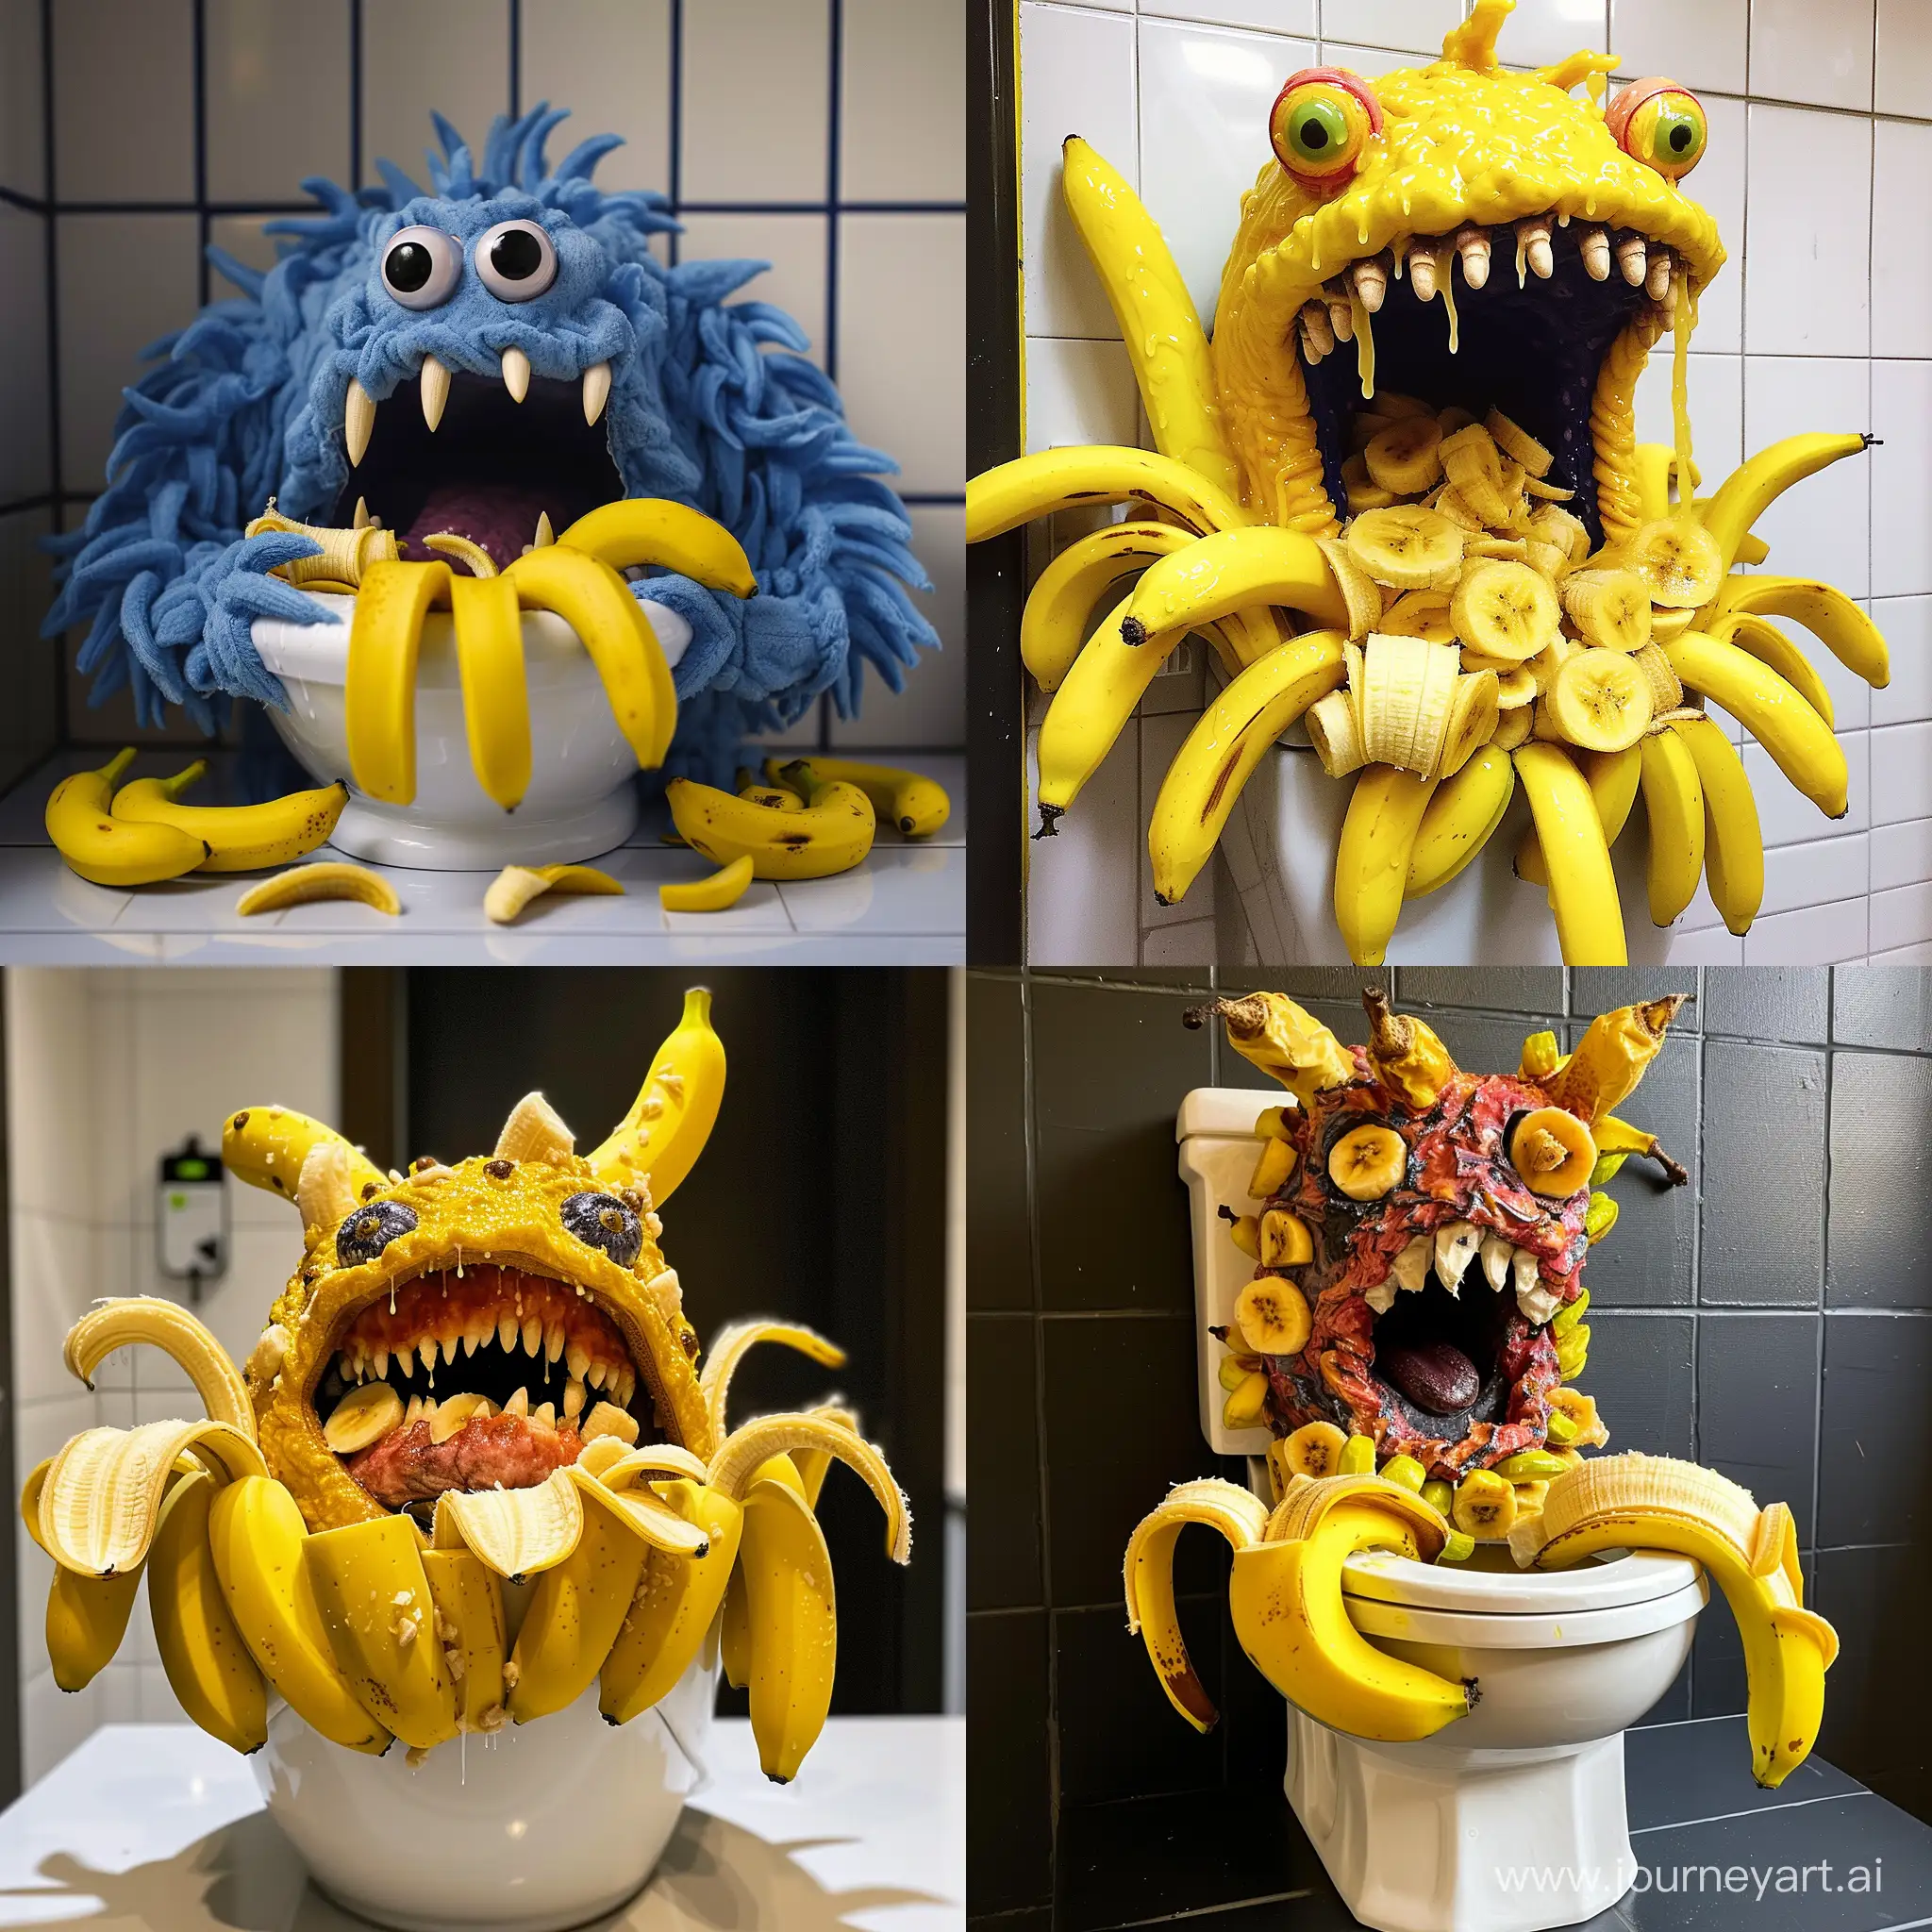 Playful-Toilet-Monster-Devours-Bananas